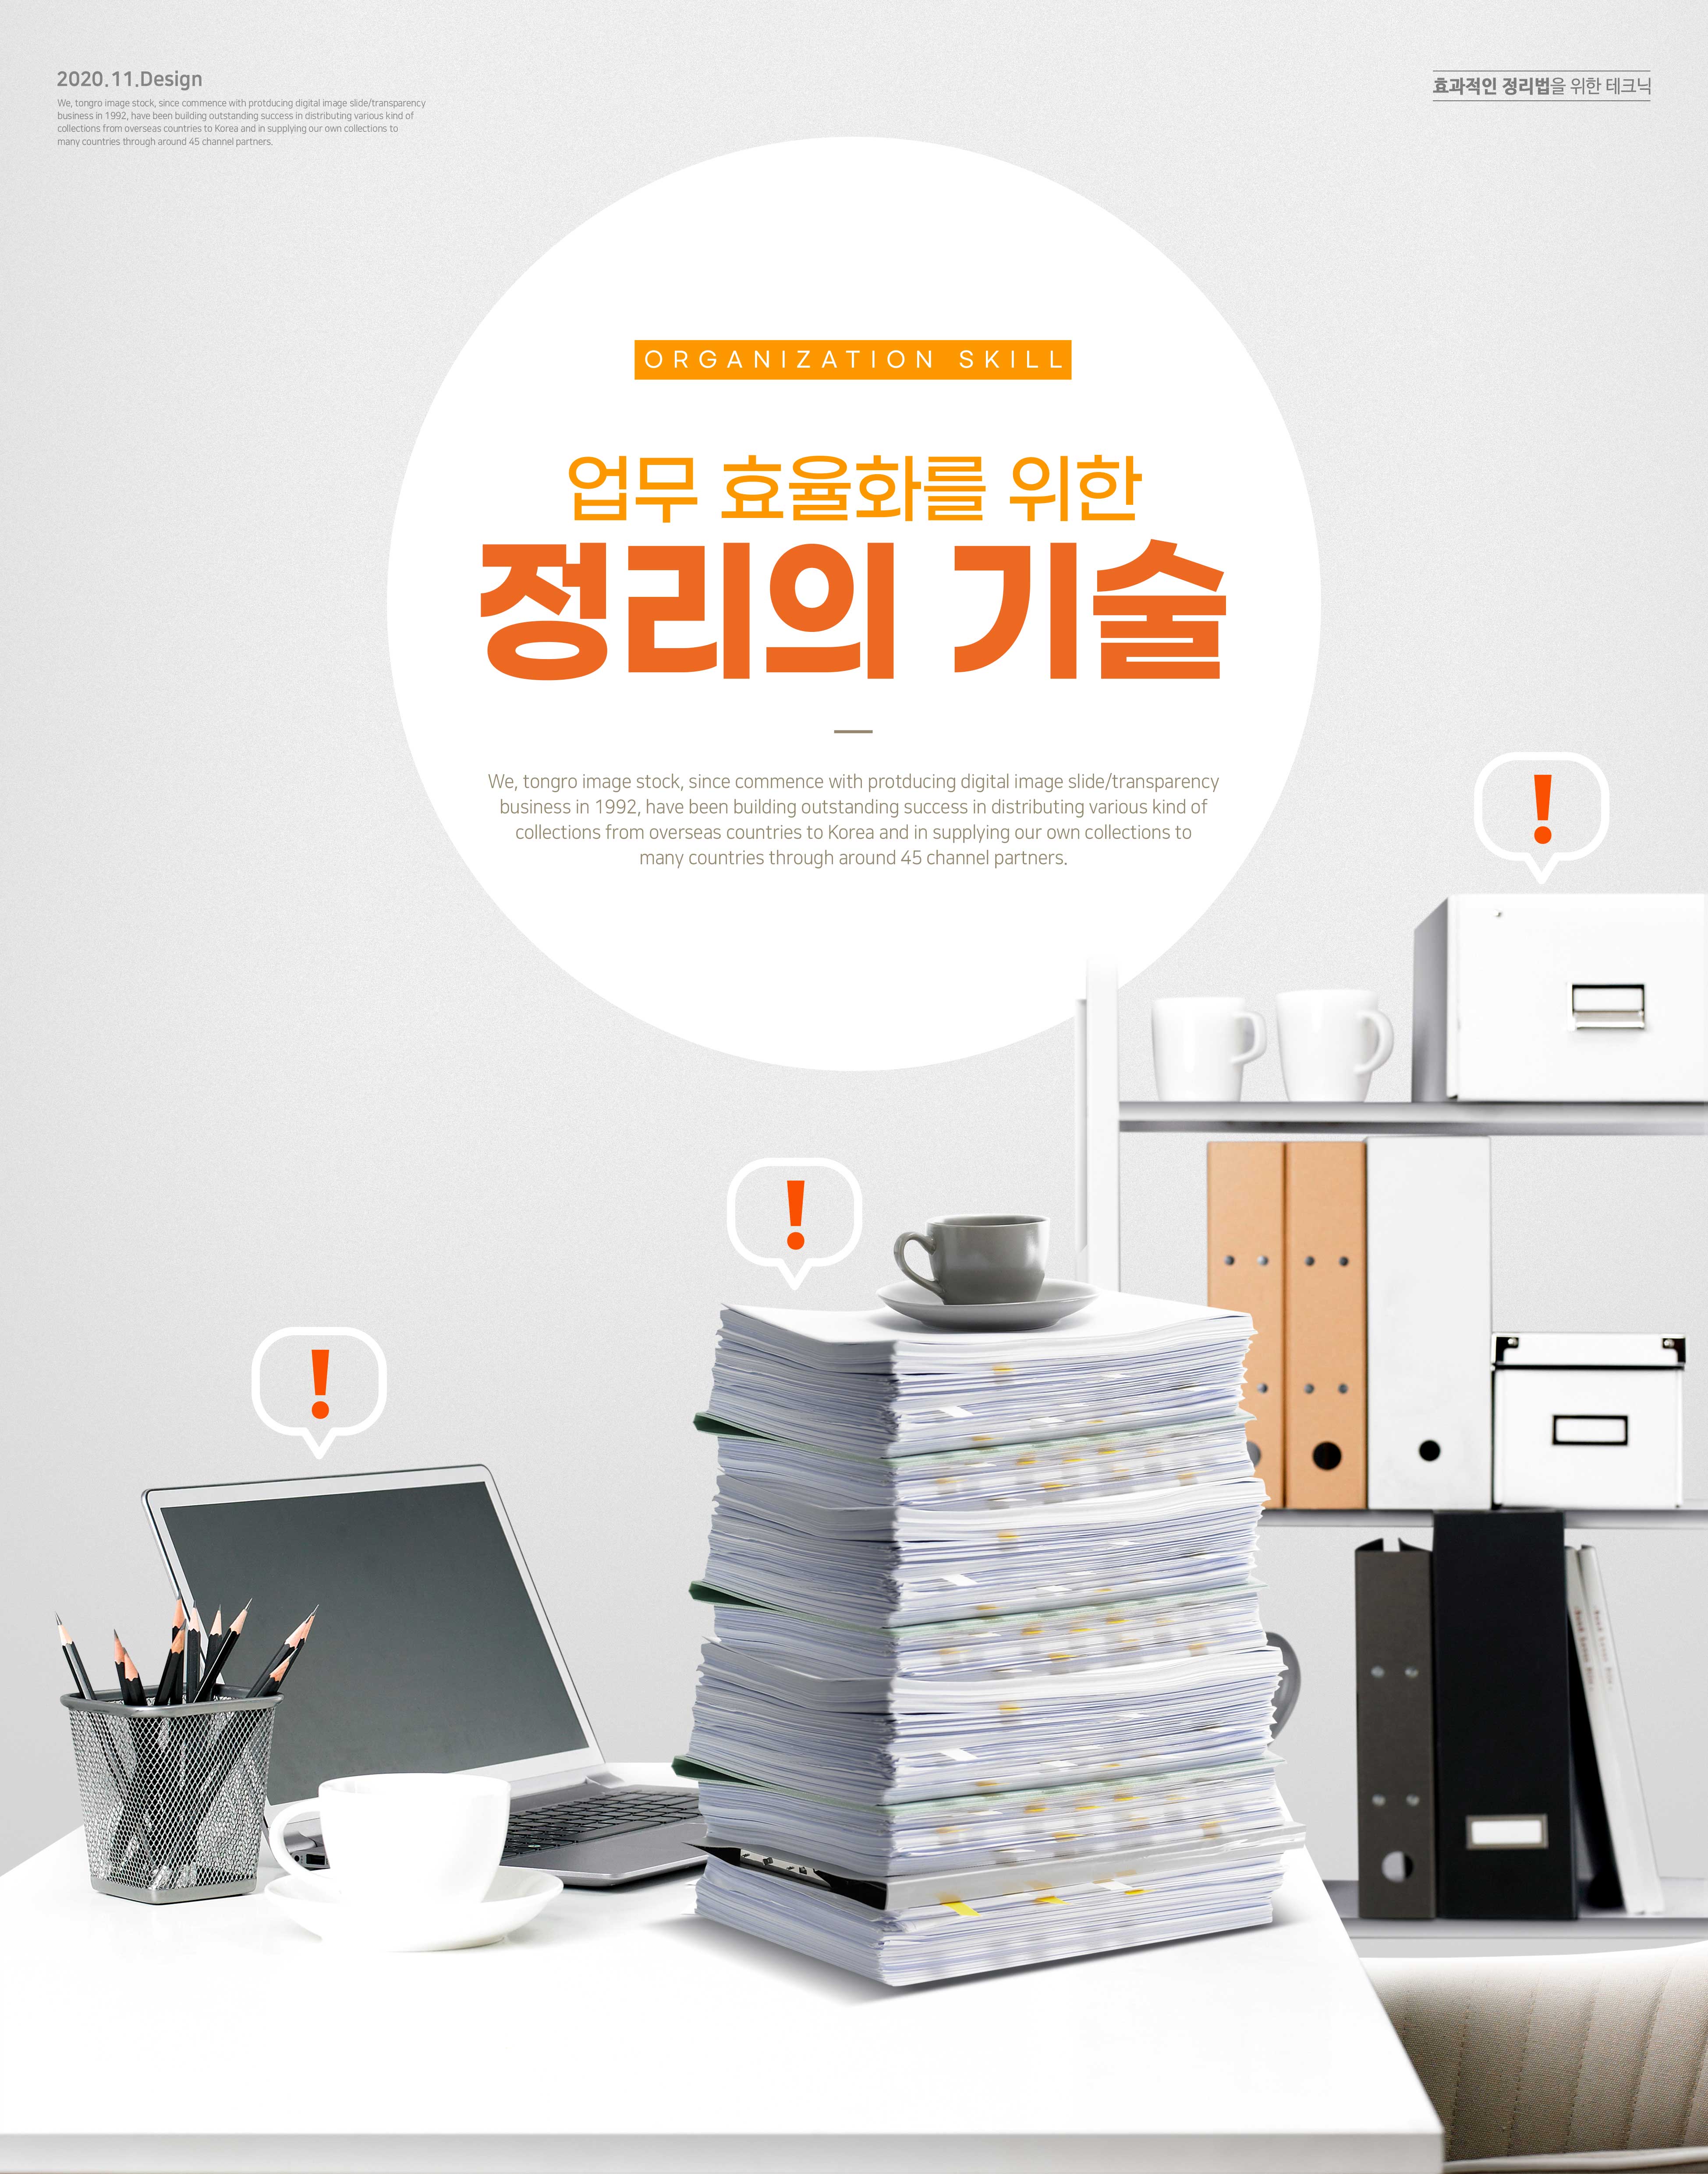 整理主题办公室海报设计韩国素材设计素材模板